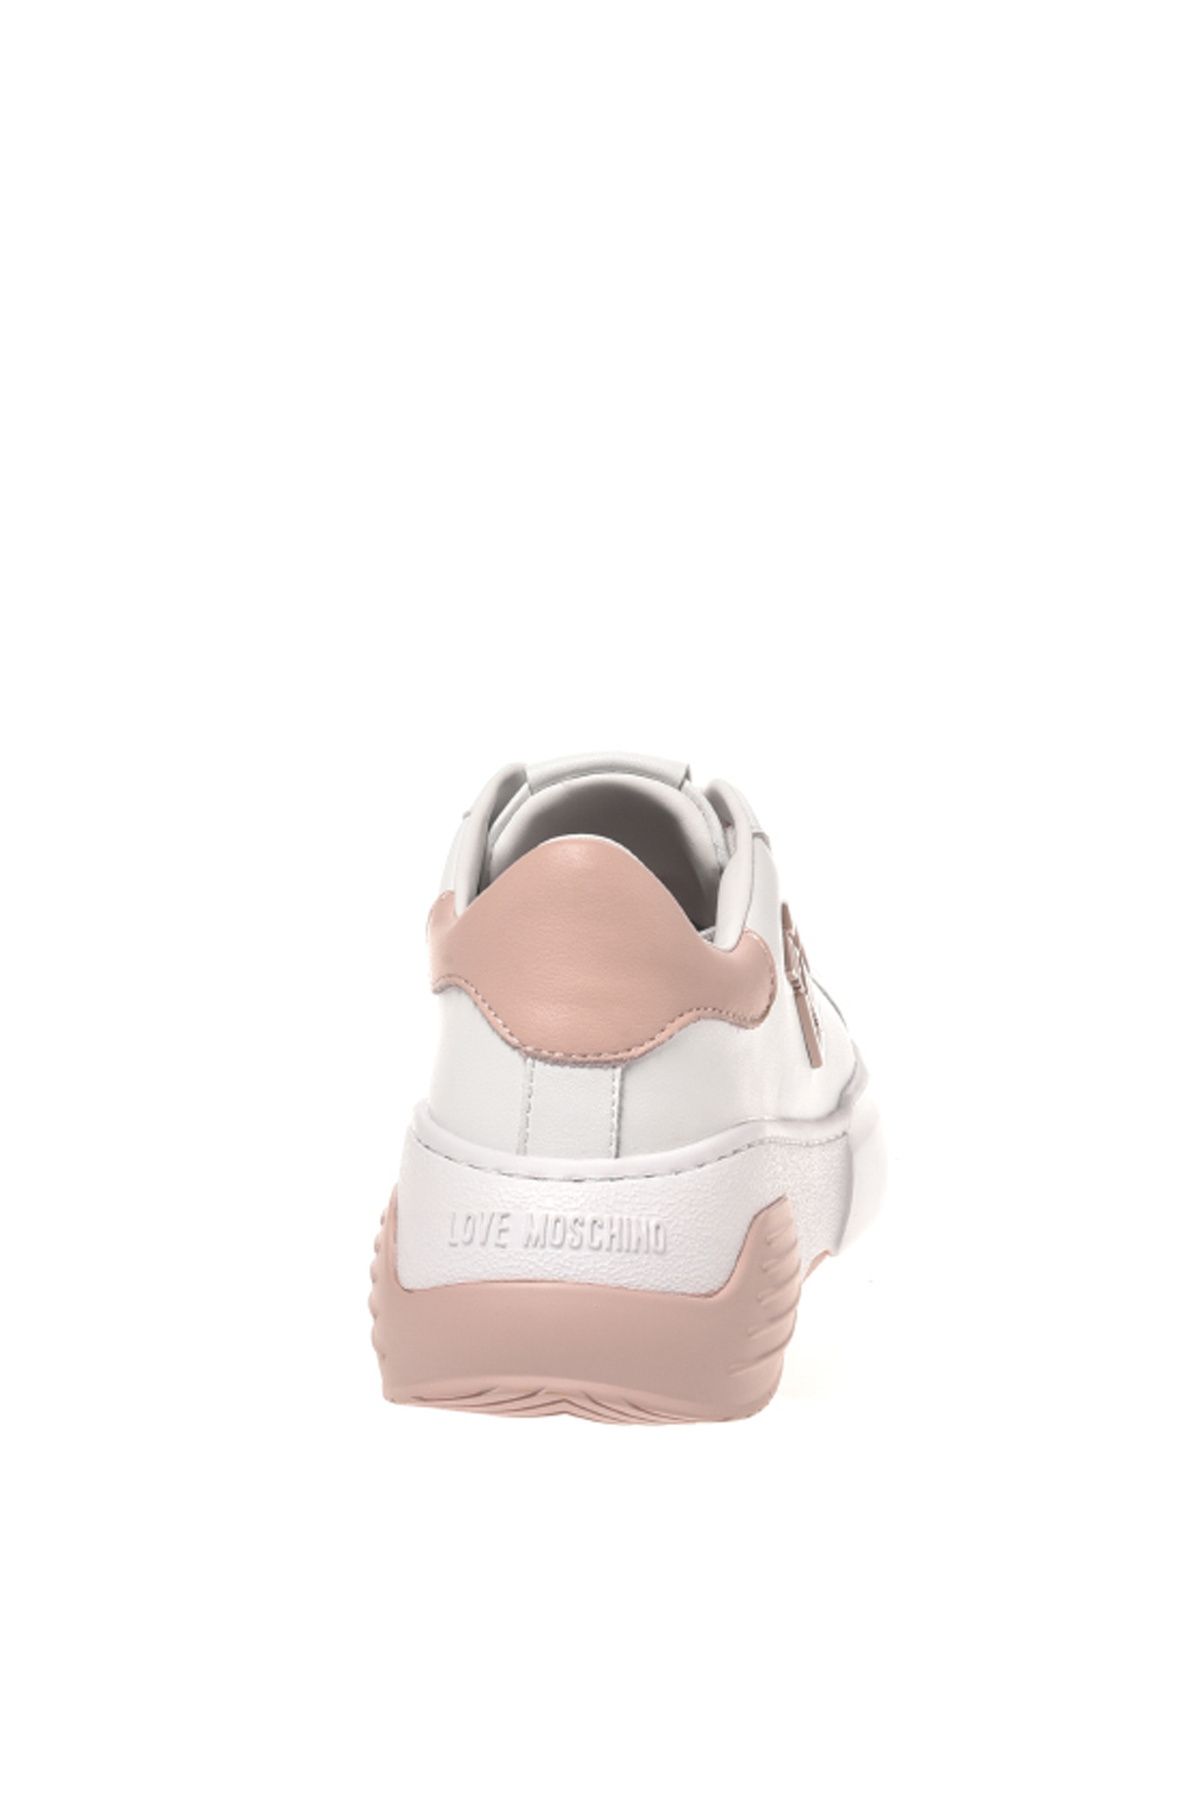 Moschino سفید - کفش ورزشی چرمی زن صورتی